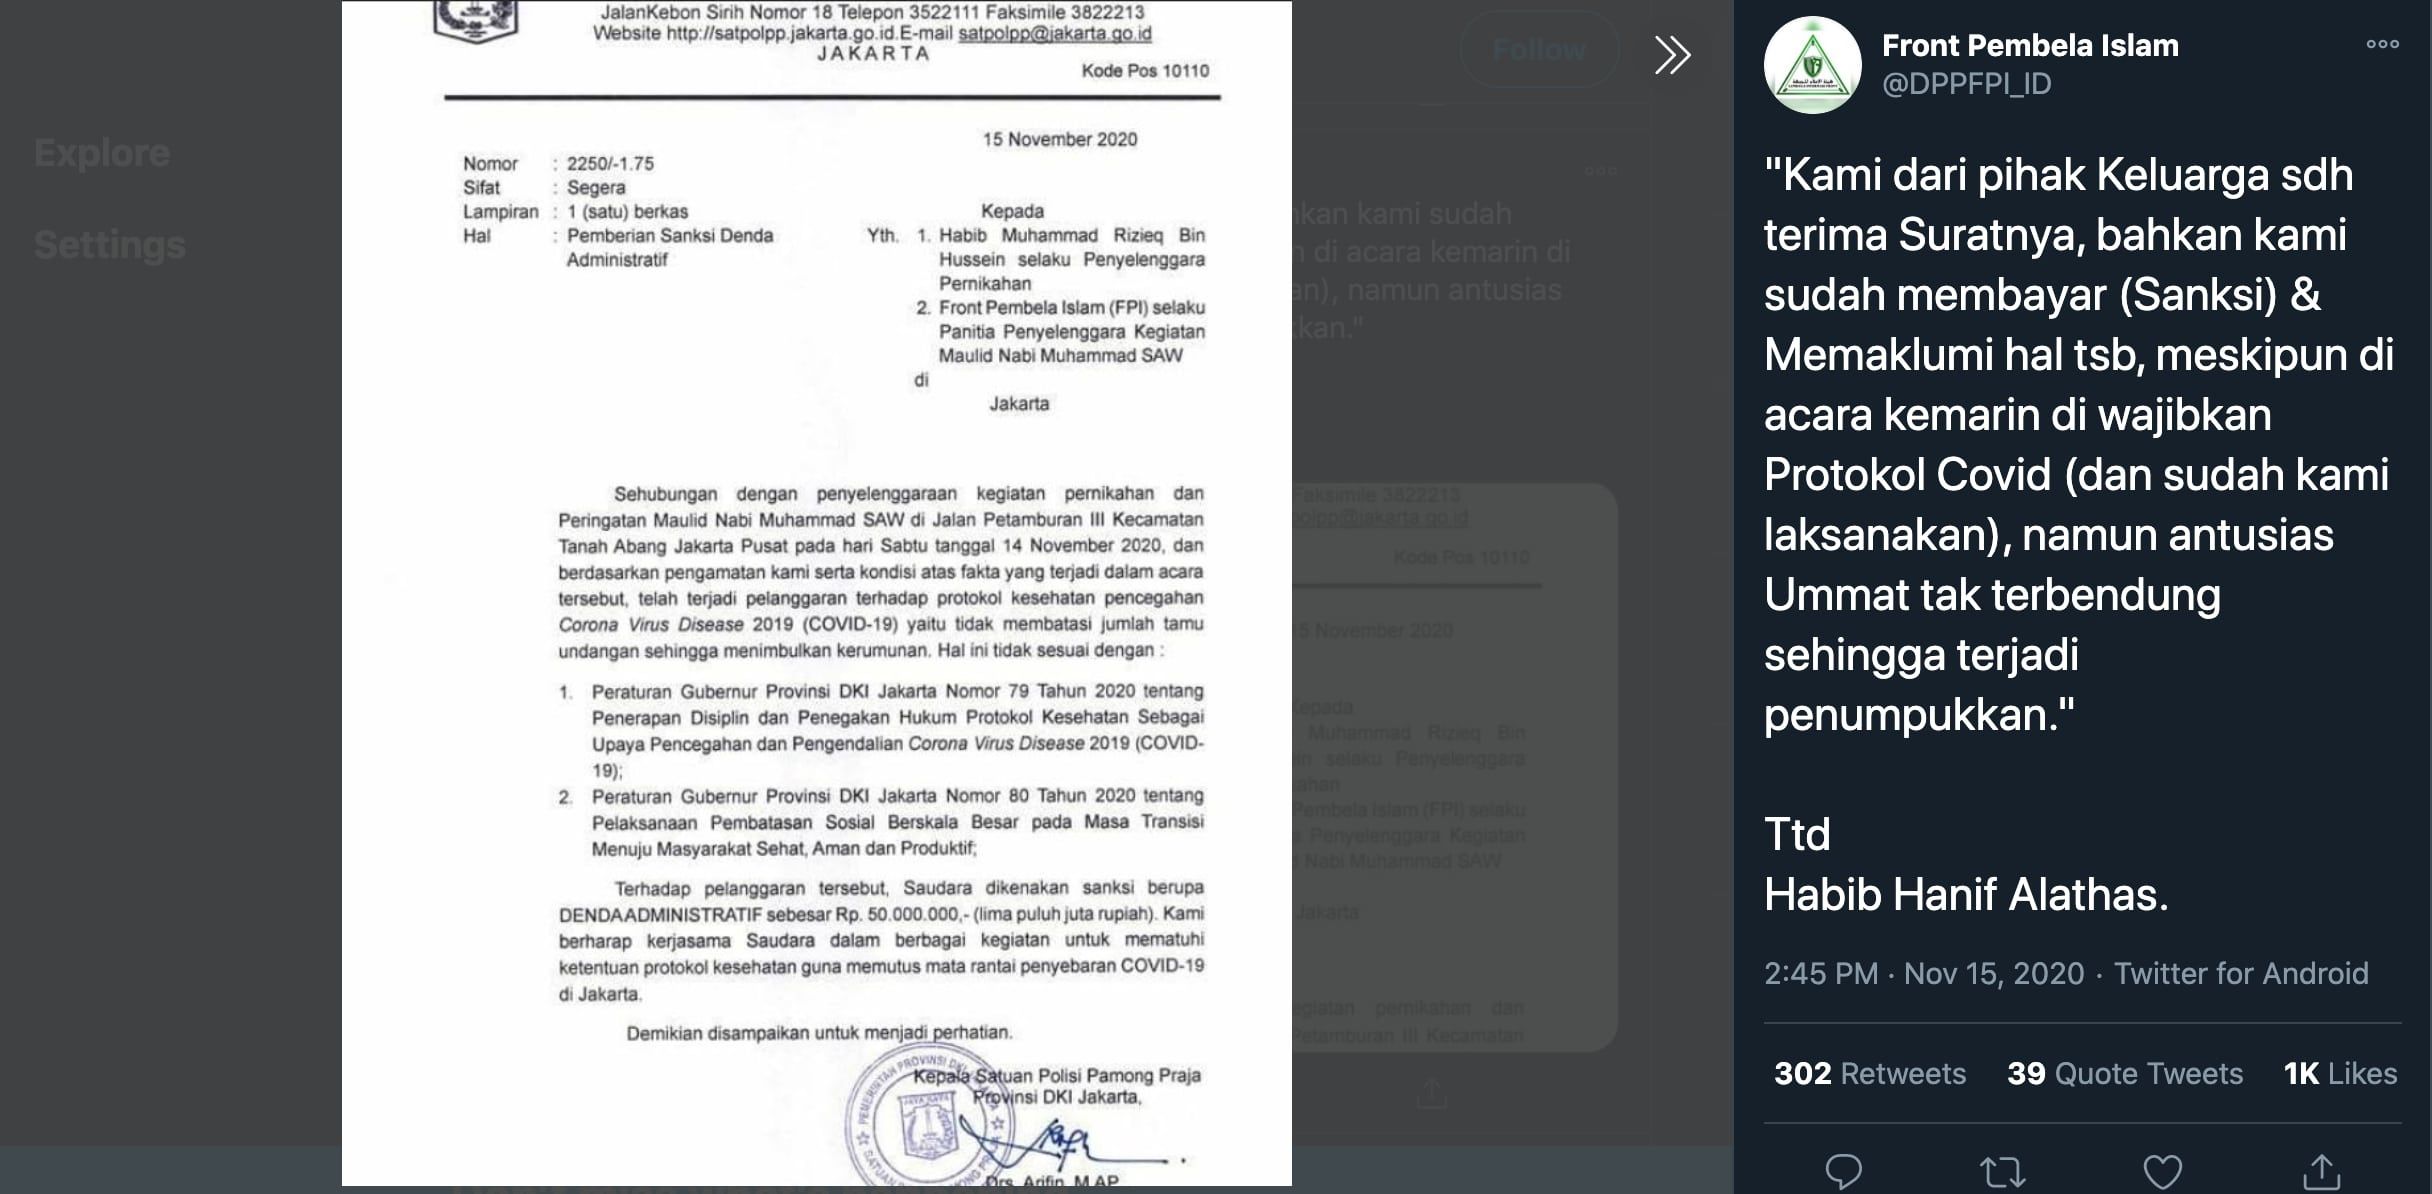 Postingan akun FPI, berisi pernyataan dari Habib Hanif Alatas yang sudah menerima sanksi dari Satpol PP DKI Jakarta. (Twitter/@DPPFPI_ID)